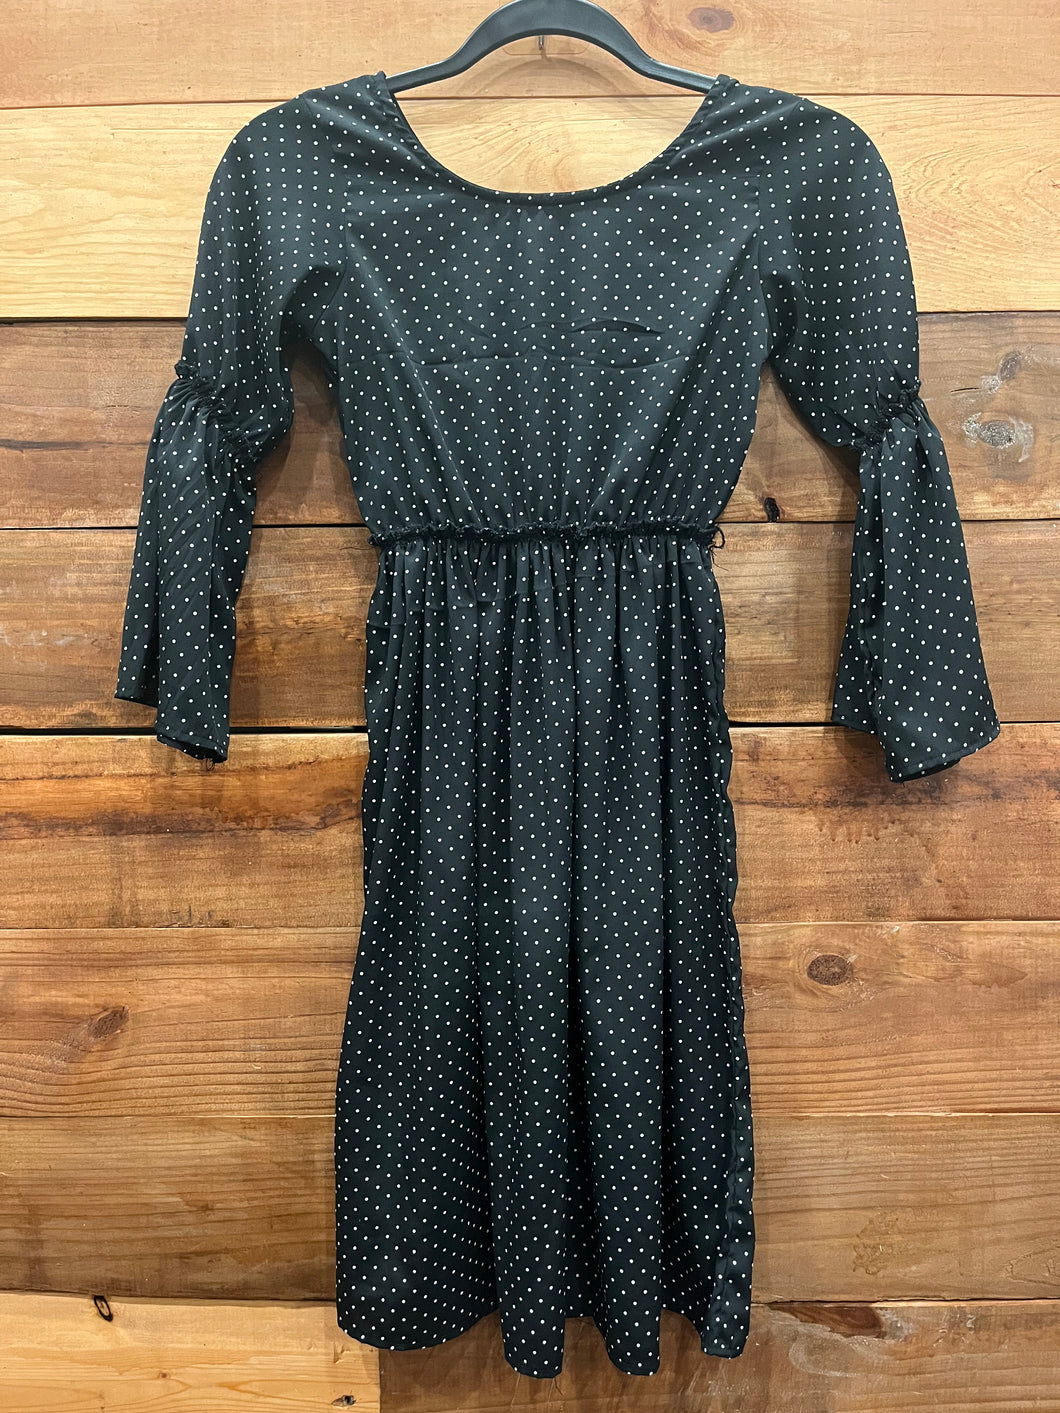 ATUN Black Polka Dot Dress Size 10-11Y